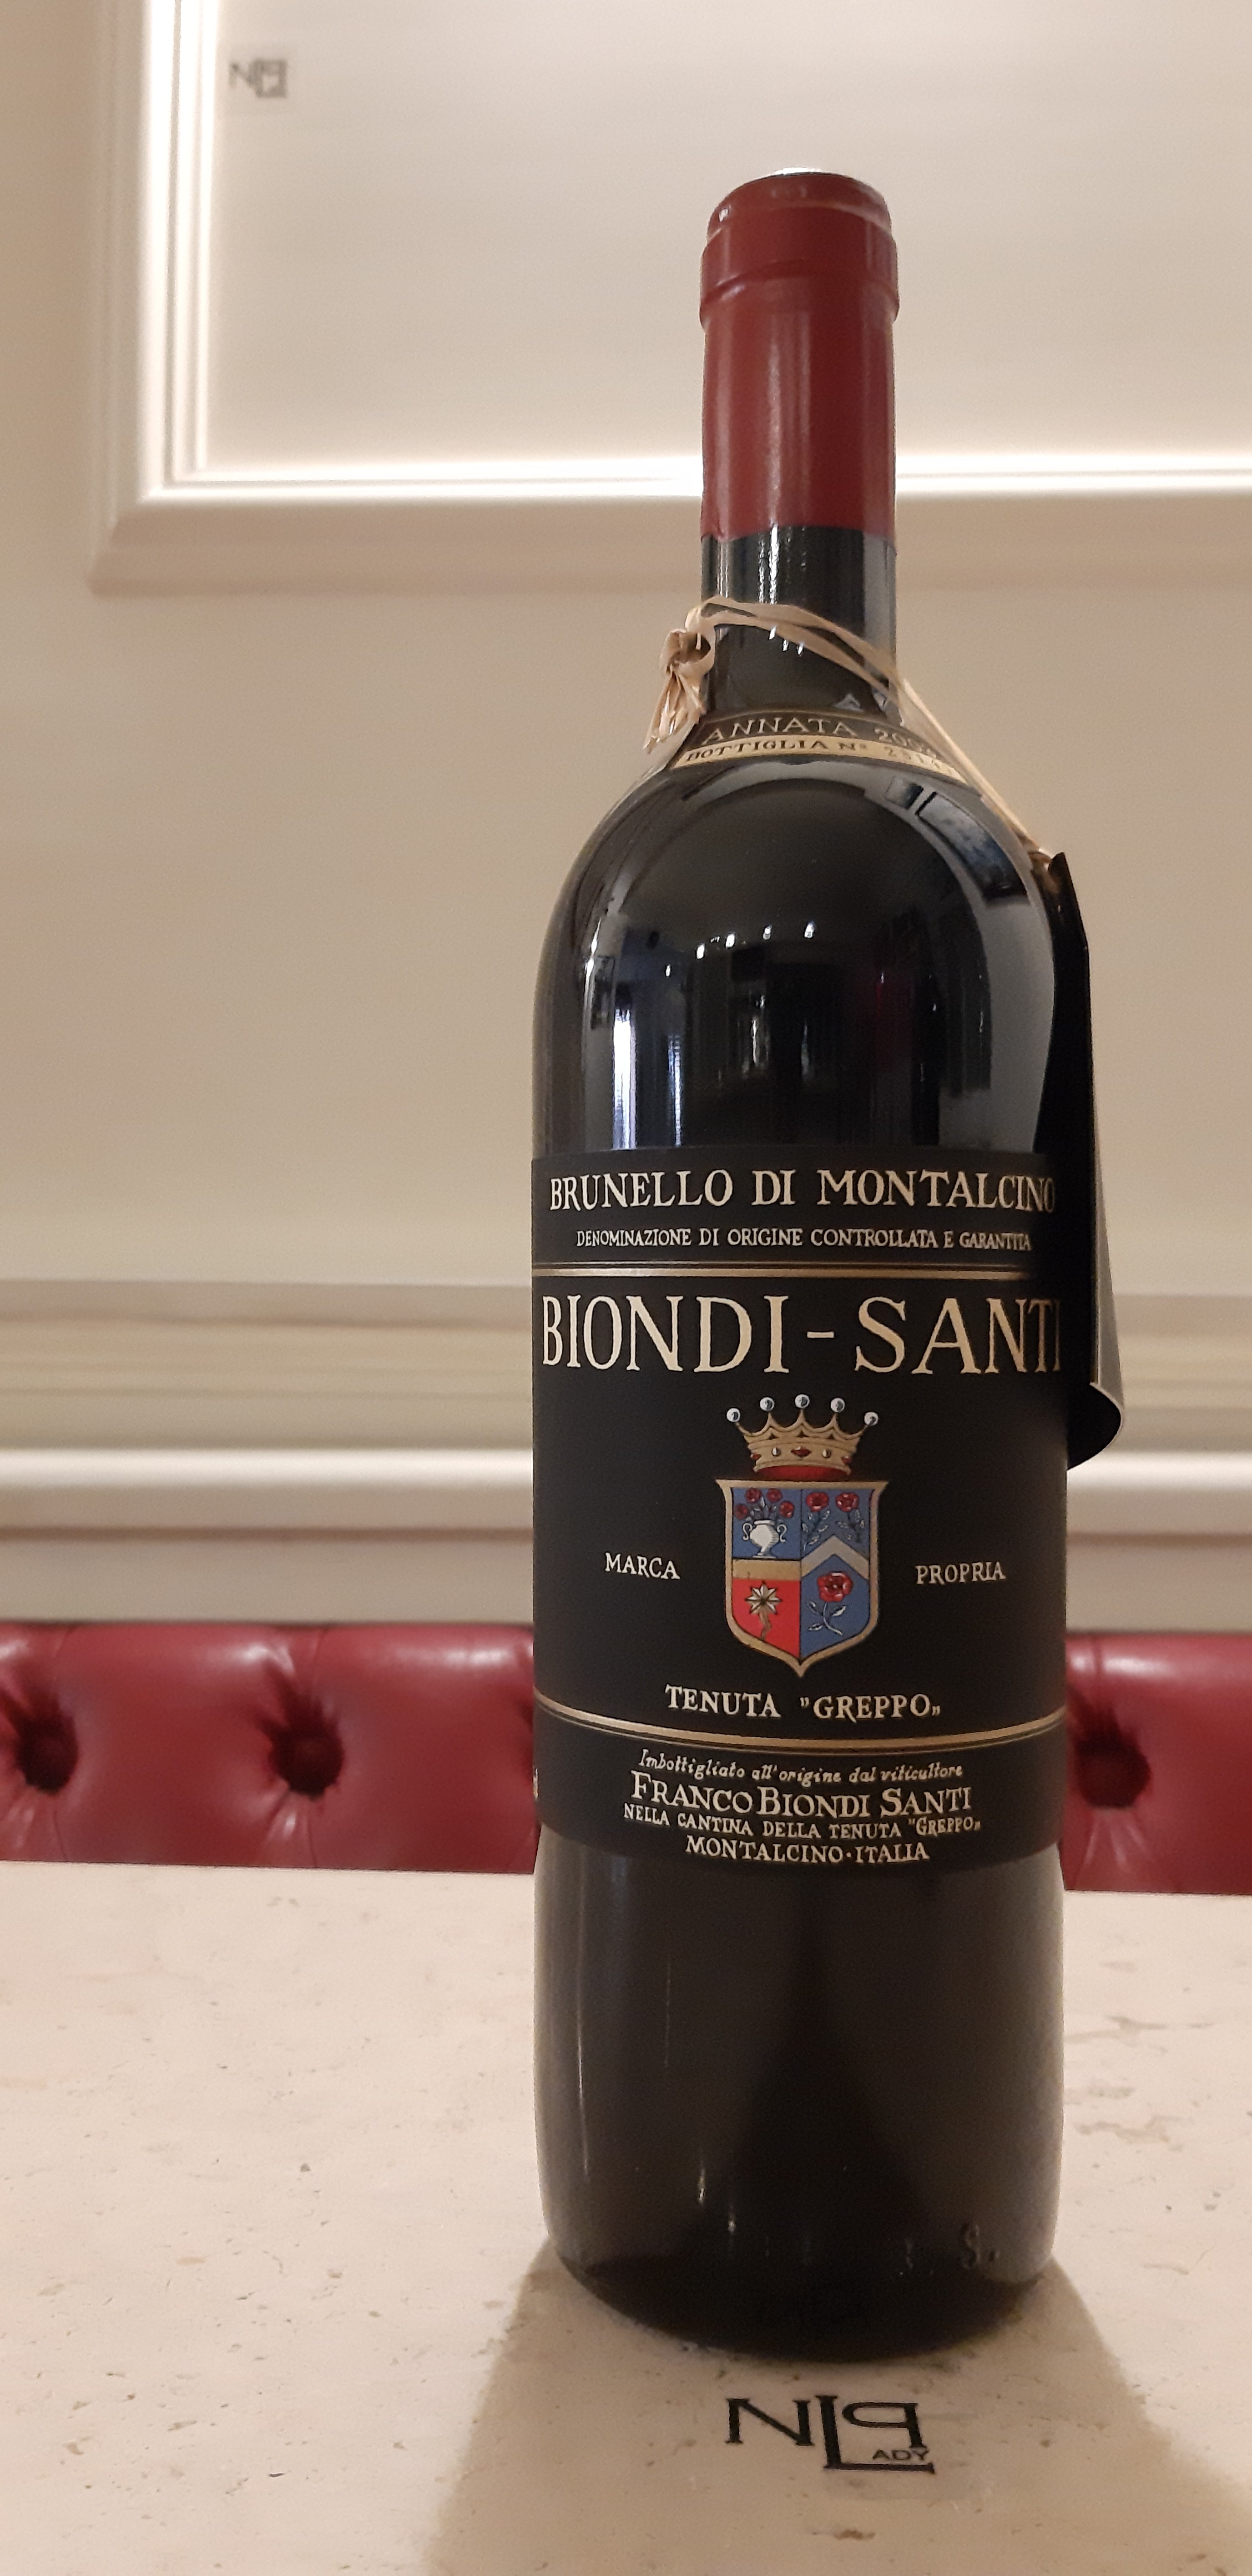 Brunello di Montalcino 2000 | Biondi Santi